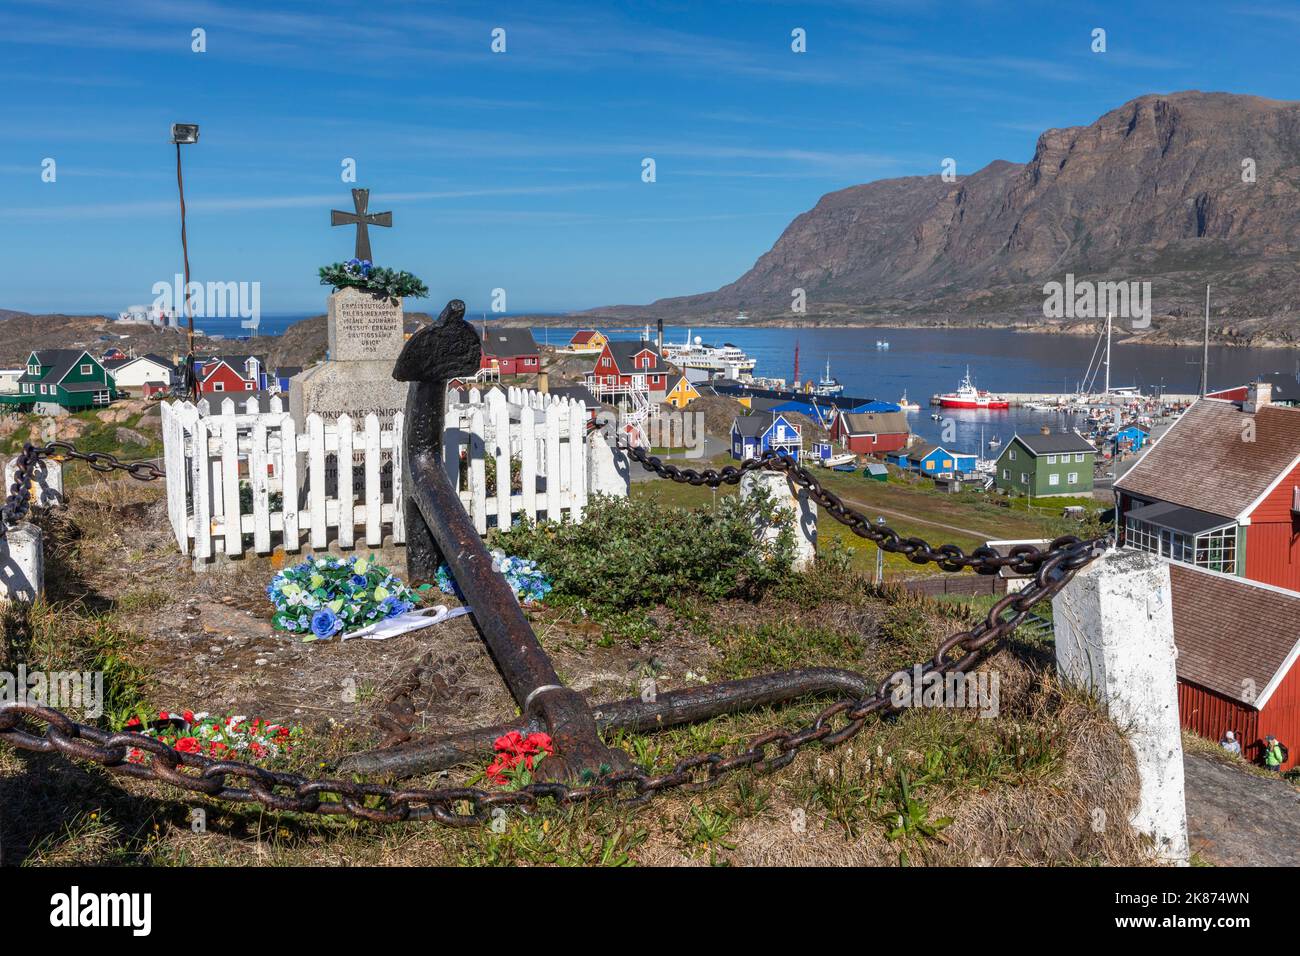 Una vista del monumento dedicado a los héroes caídos en la ciudad de Sisimiut, Groenlandia, Dinamarca, Regiones Polares Foto de stock